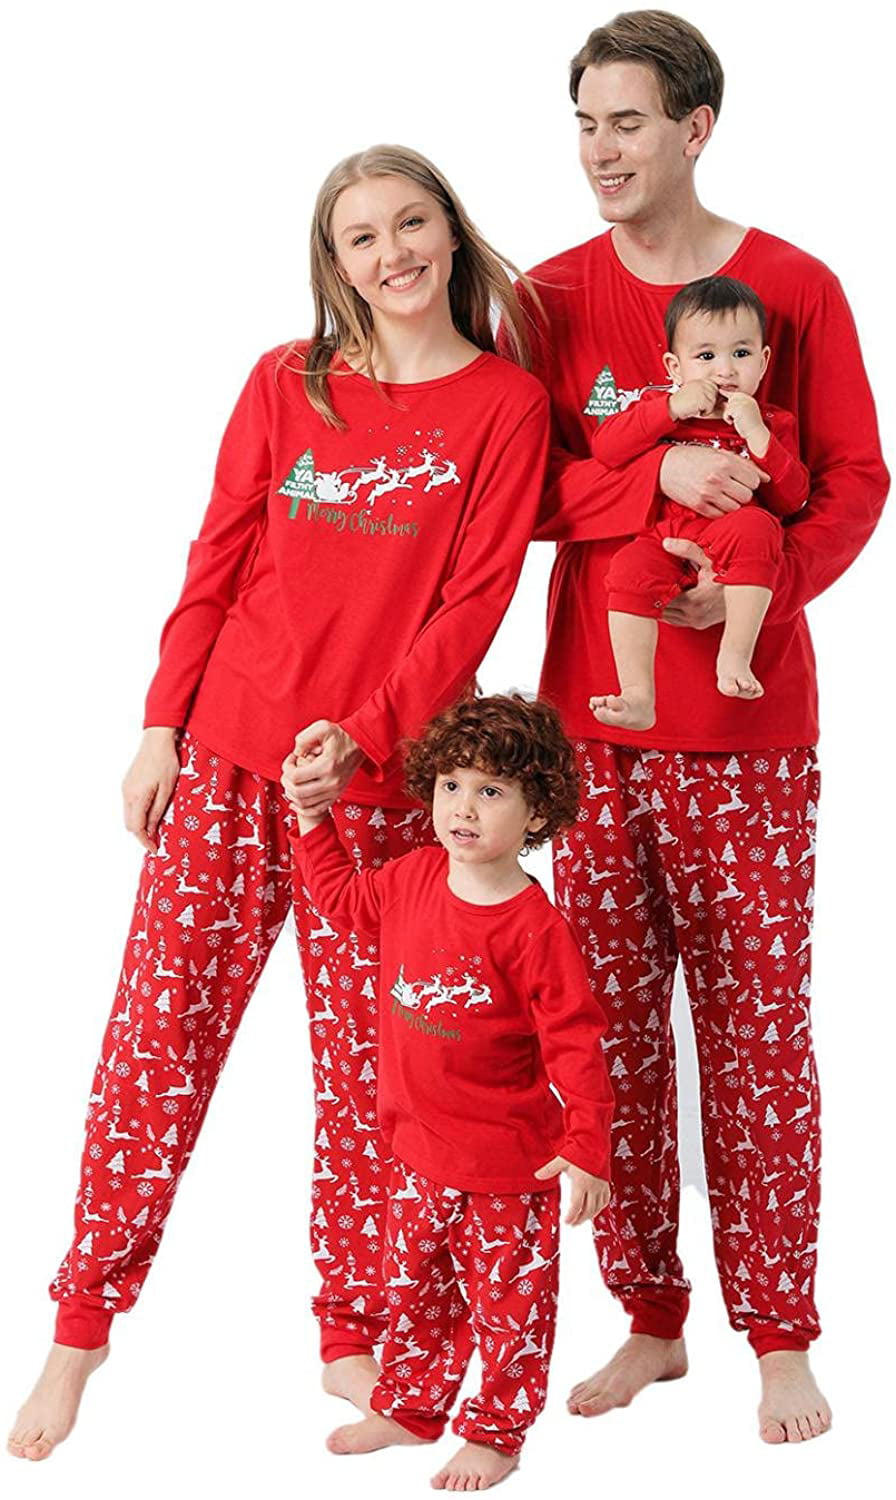 Baby Toddler Boys Girls Red Blue & White Christmas Print Pyjamas Romper PJ's 